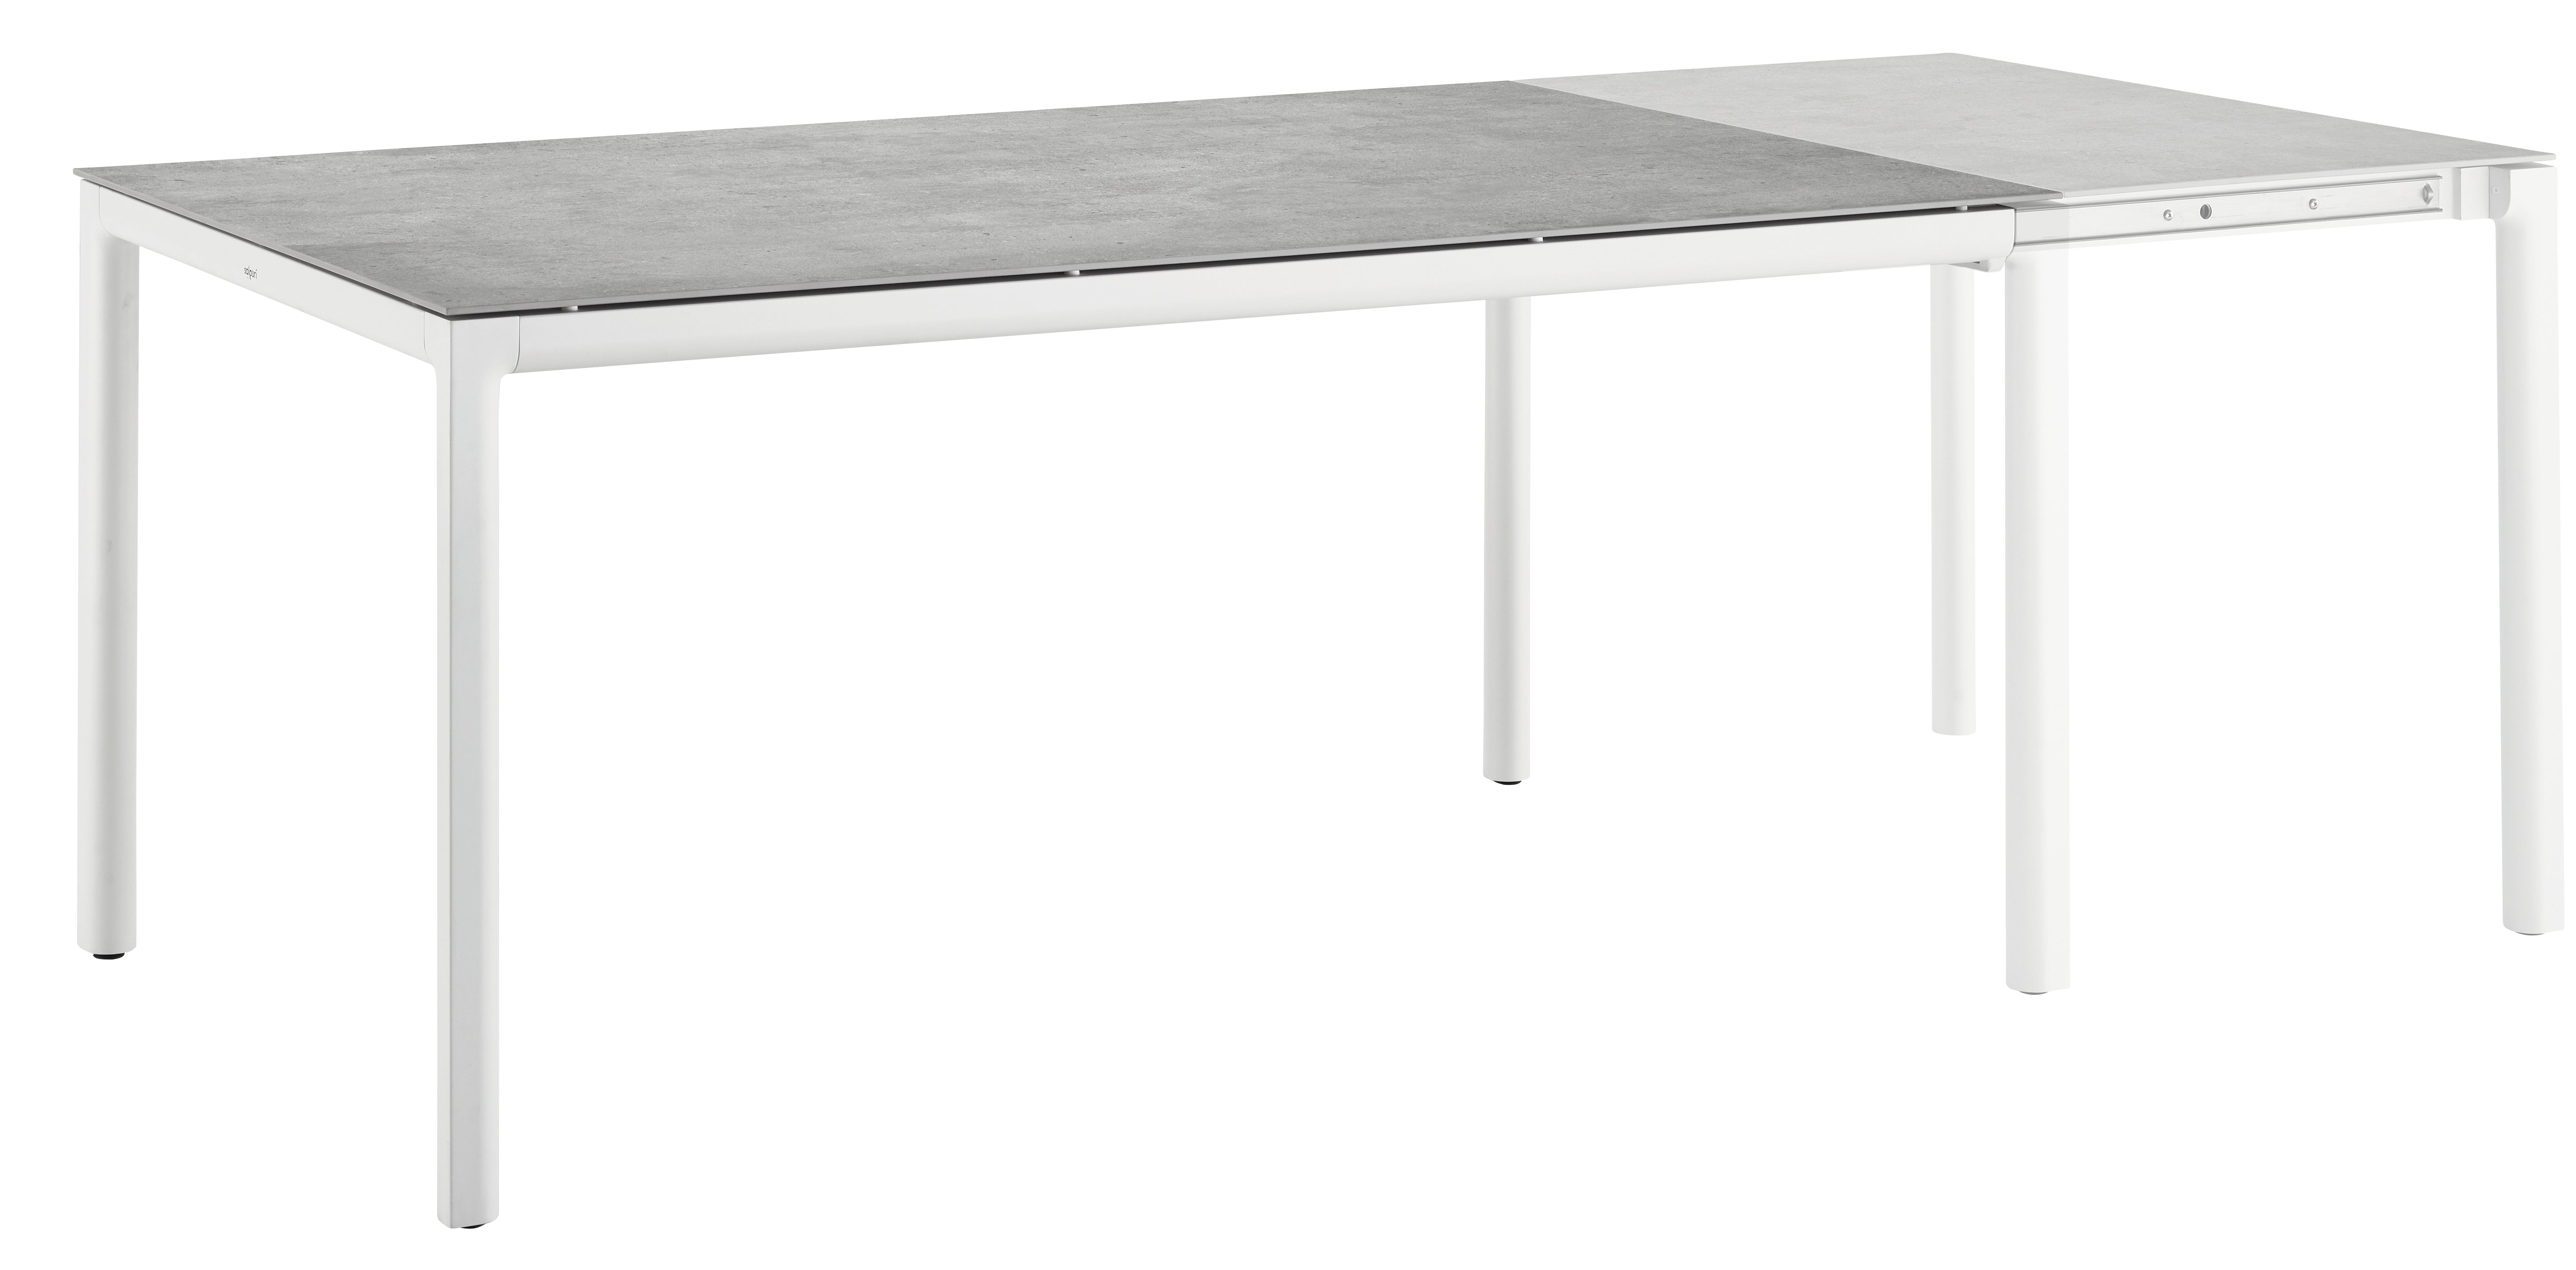 Verdrag tellen uitgebreid Solpuri, Soft uitschuifbare tafel. Verkrijgbaar in twee kleuren frame, –  jenb-shop.nl/